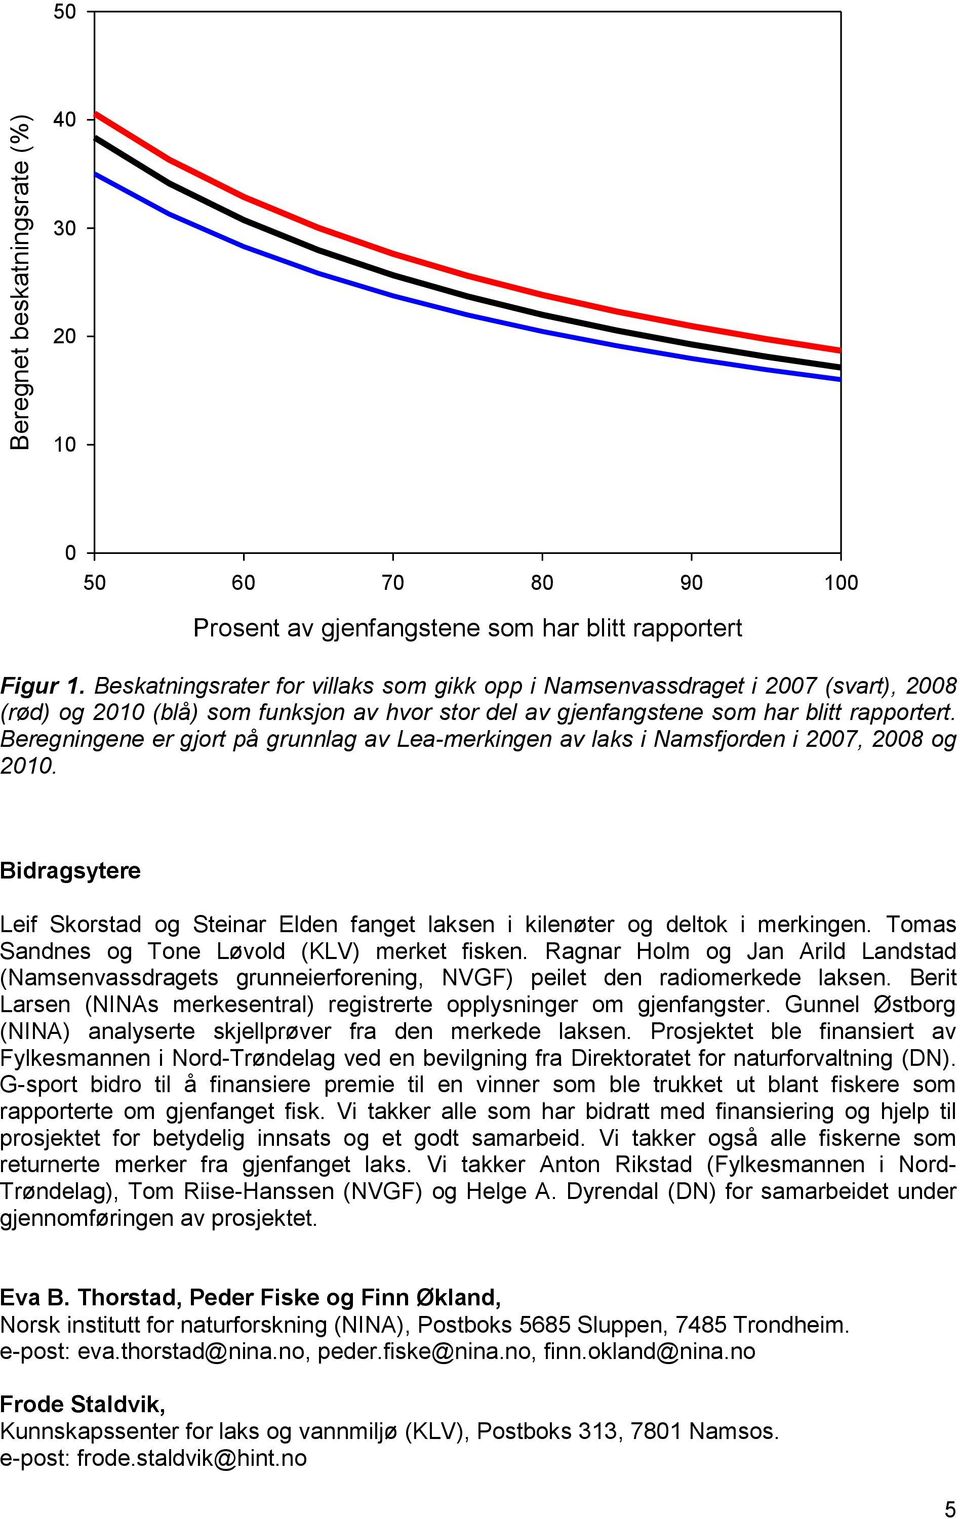 Beskatningsrater for villaks som gikk opp i Namsenvassdraget i 2007 (svart), 2008 (rød) og 2010 (blå) som funksjon av hvor stor del av gjenfangstene som har blitt rapportert.